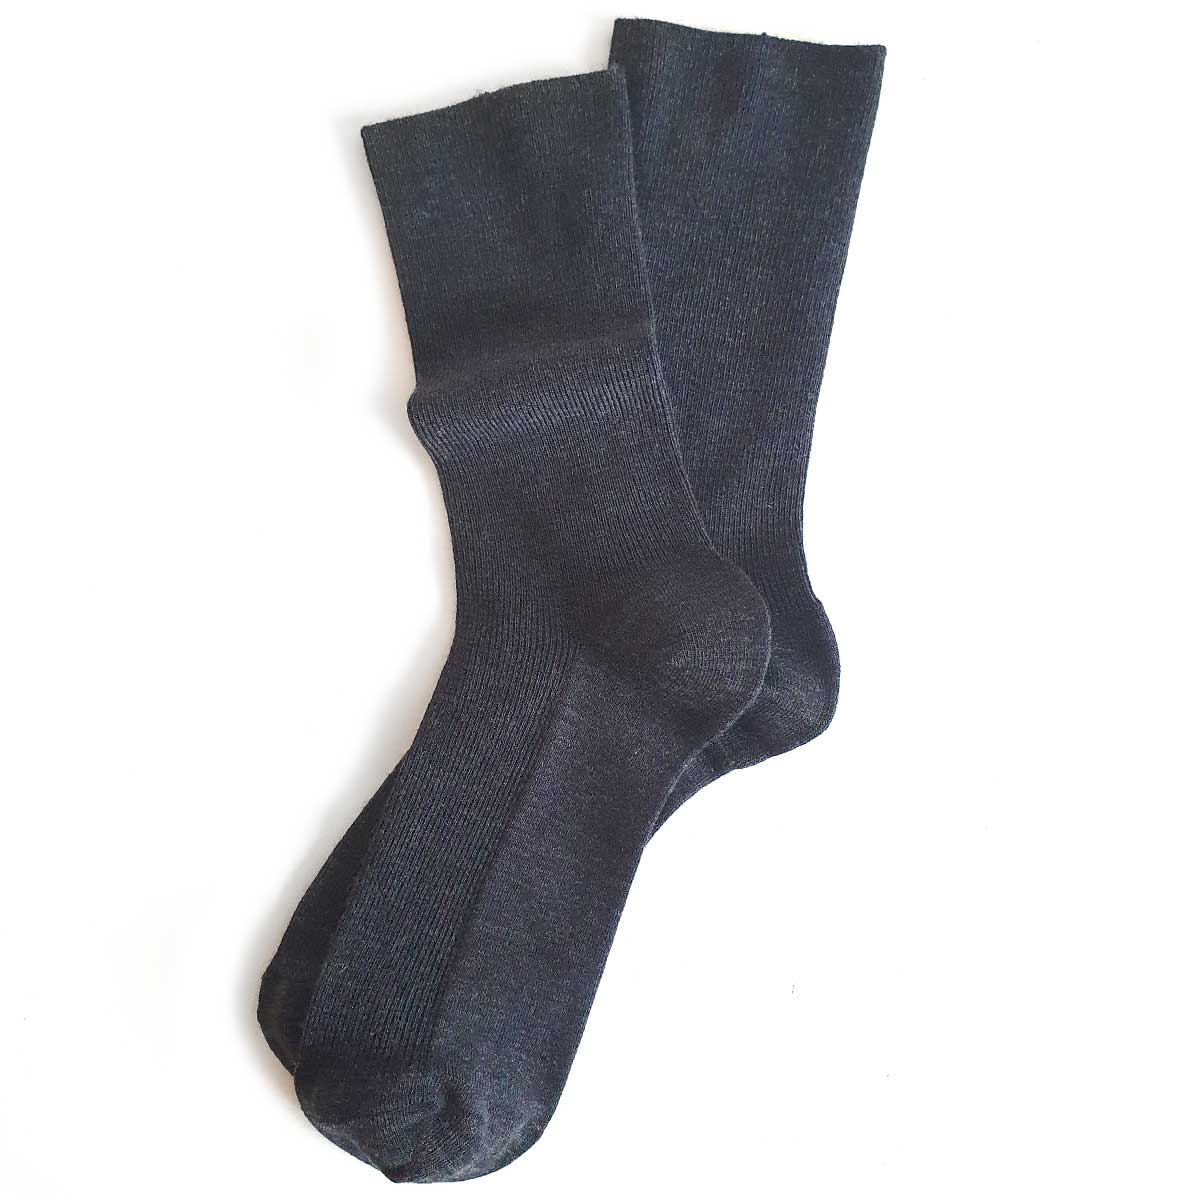 Thin wool socks for women - socks that do not tighten